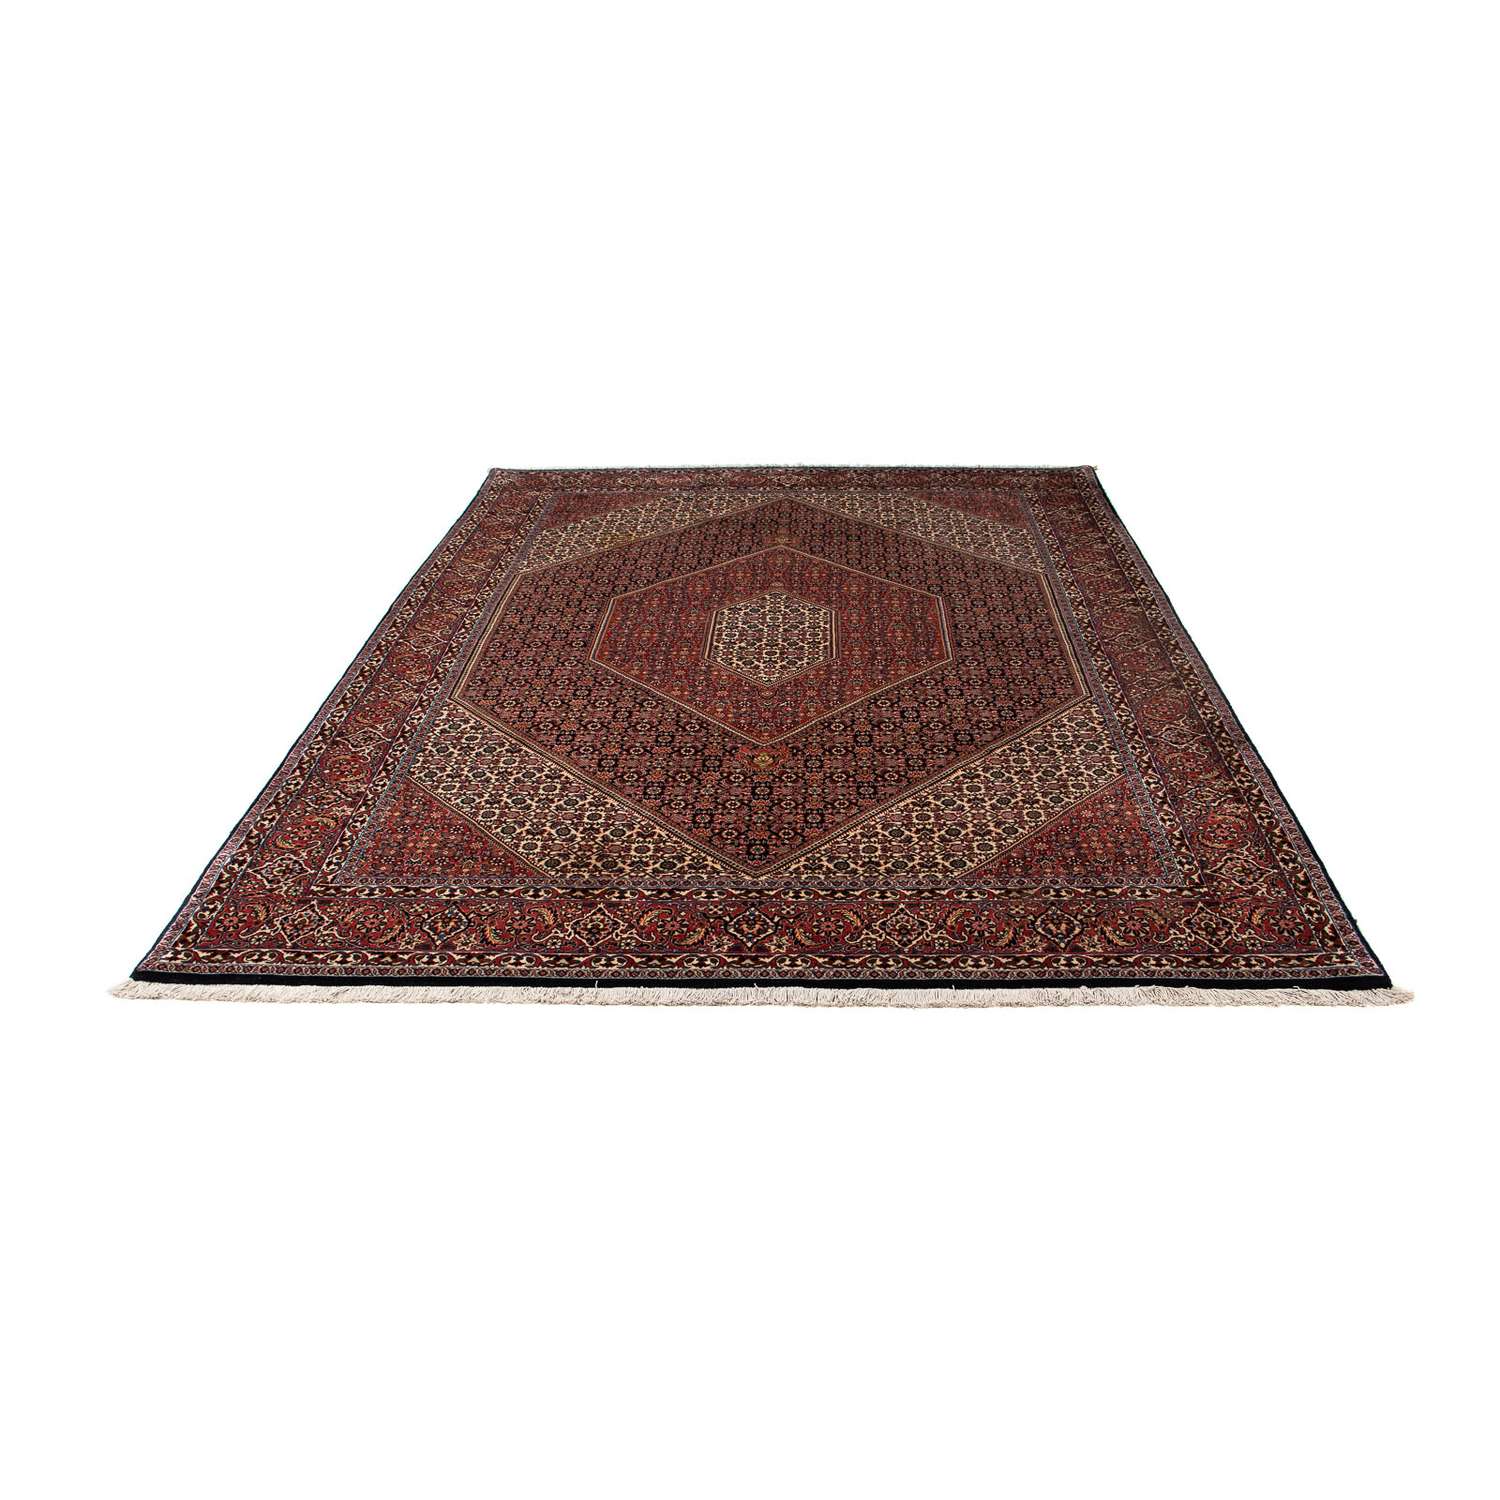 Perzisch tapijt - Bijar - 272 x 198 cm - bruin